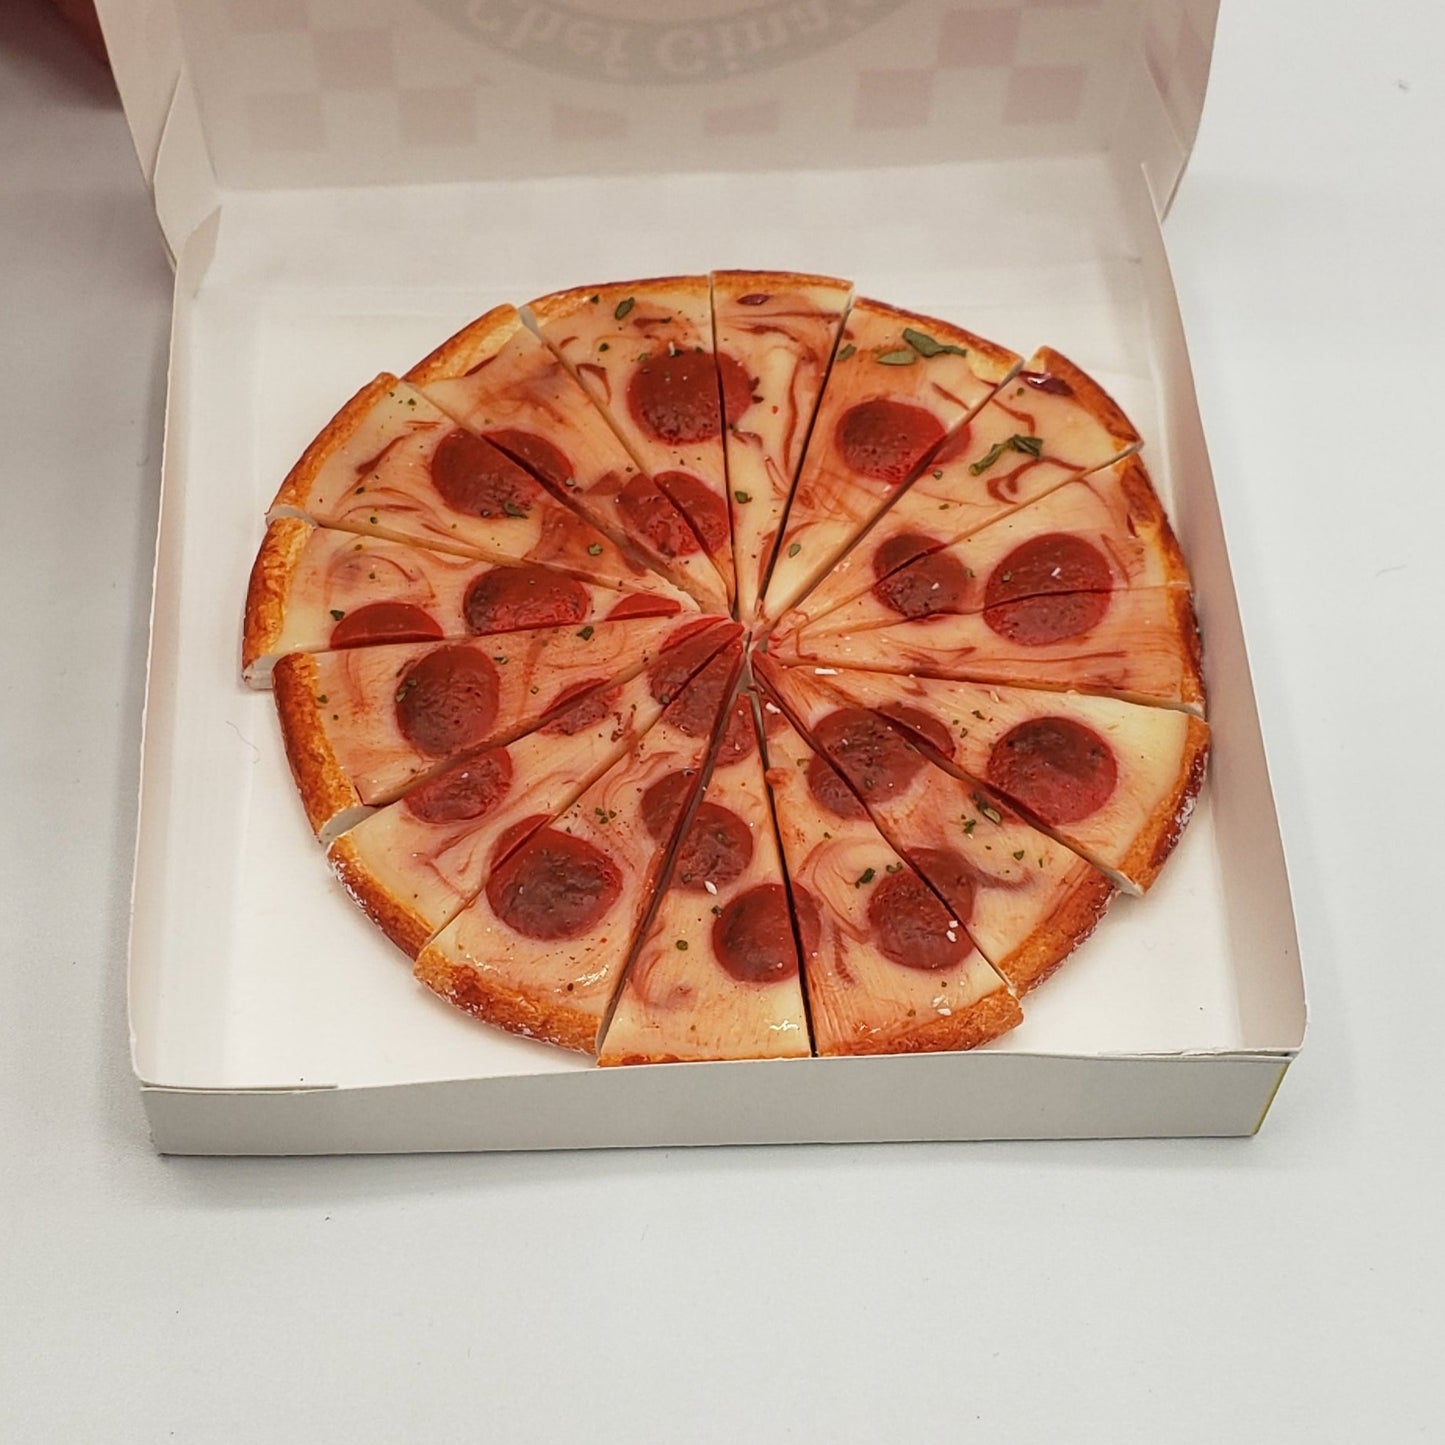 16 slice pizza